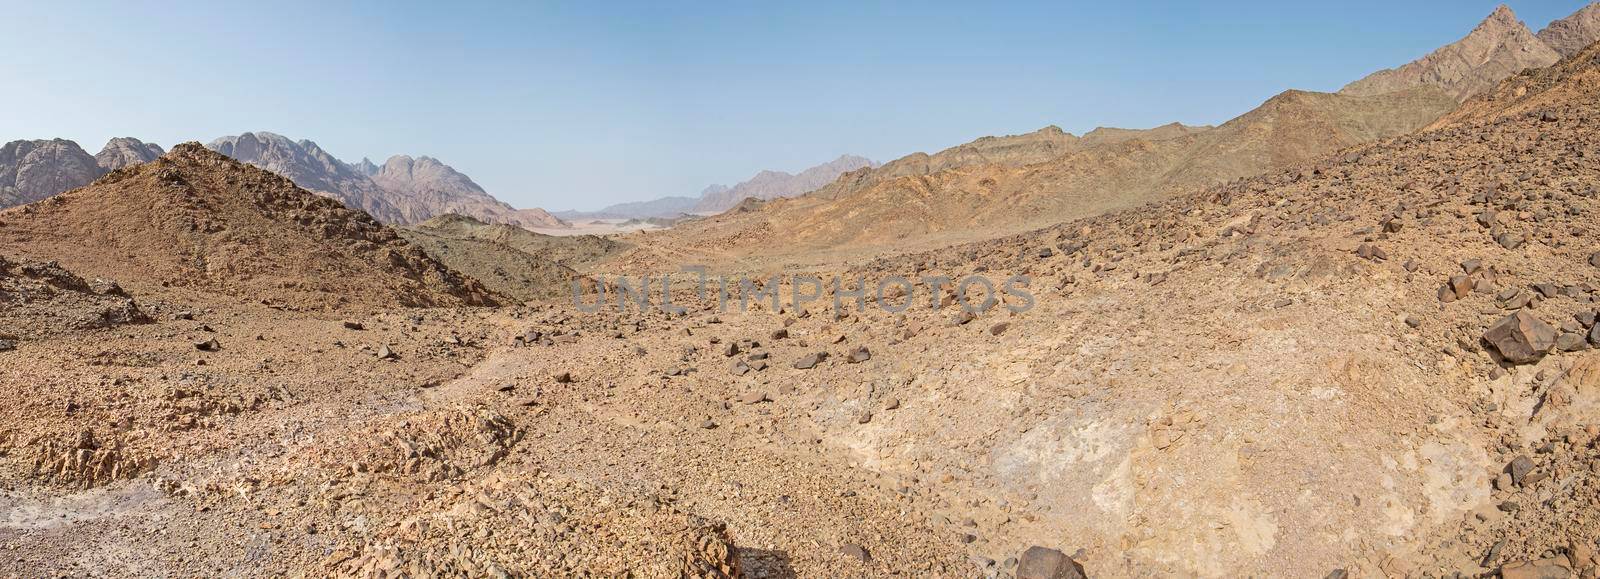 Rocky mountain slope landscape in a desert by paulvinten